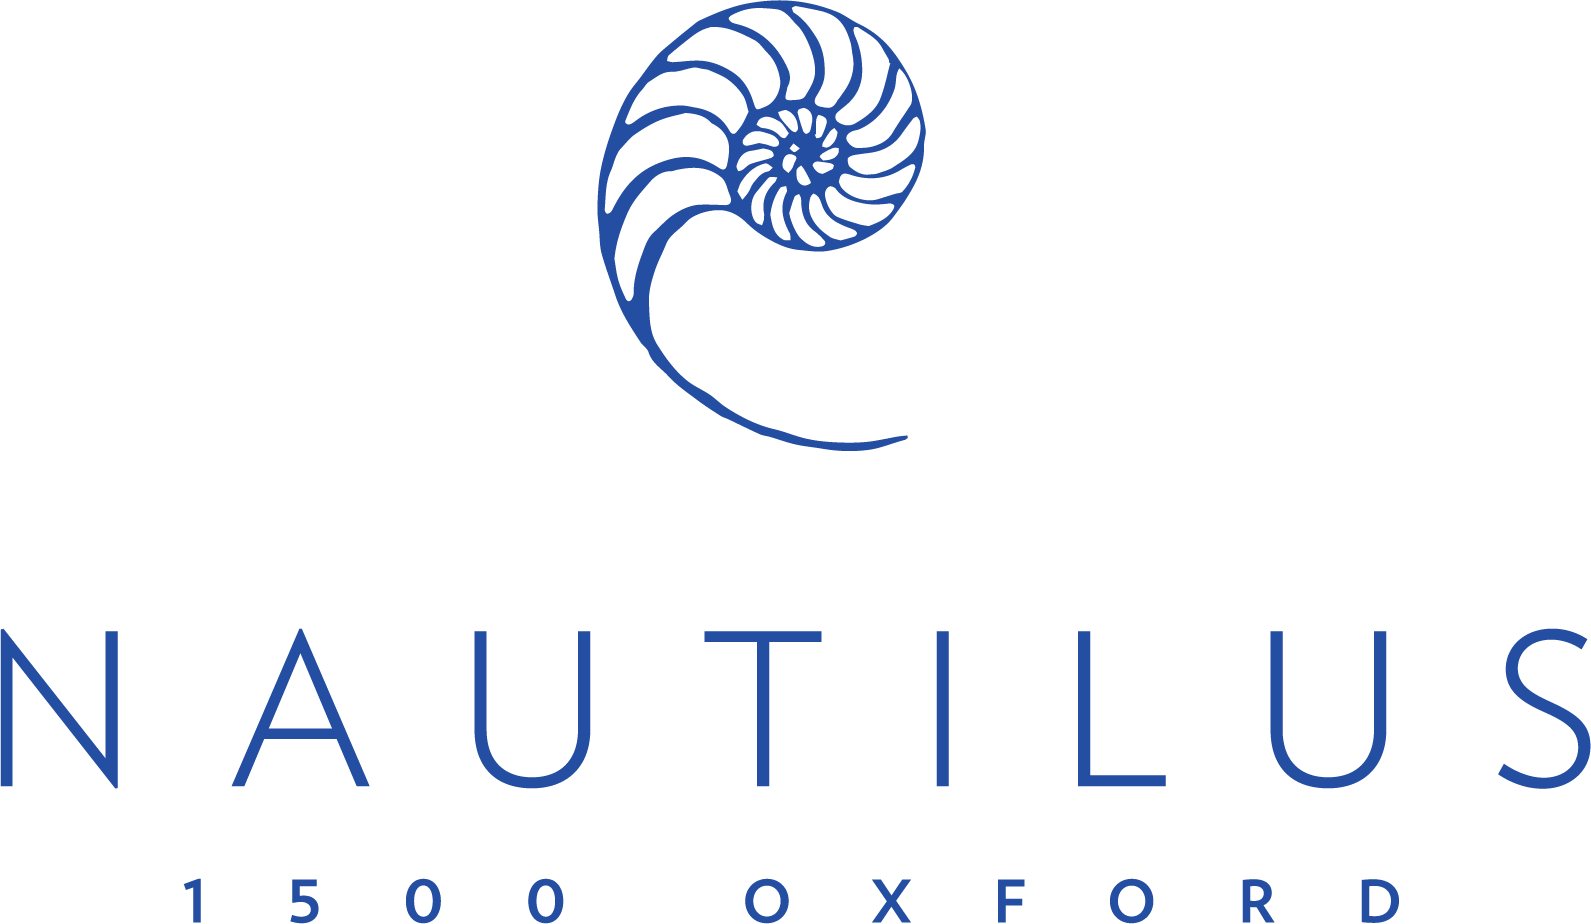 Nautilus_logo_blue